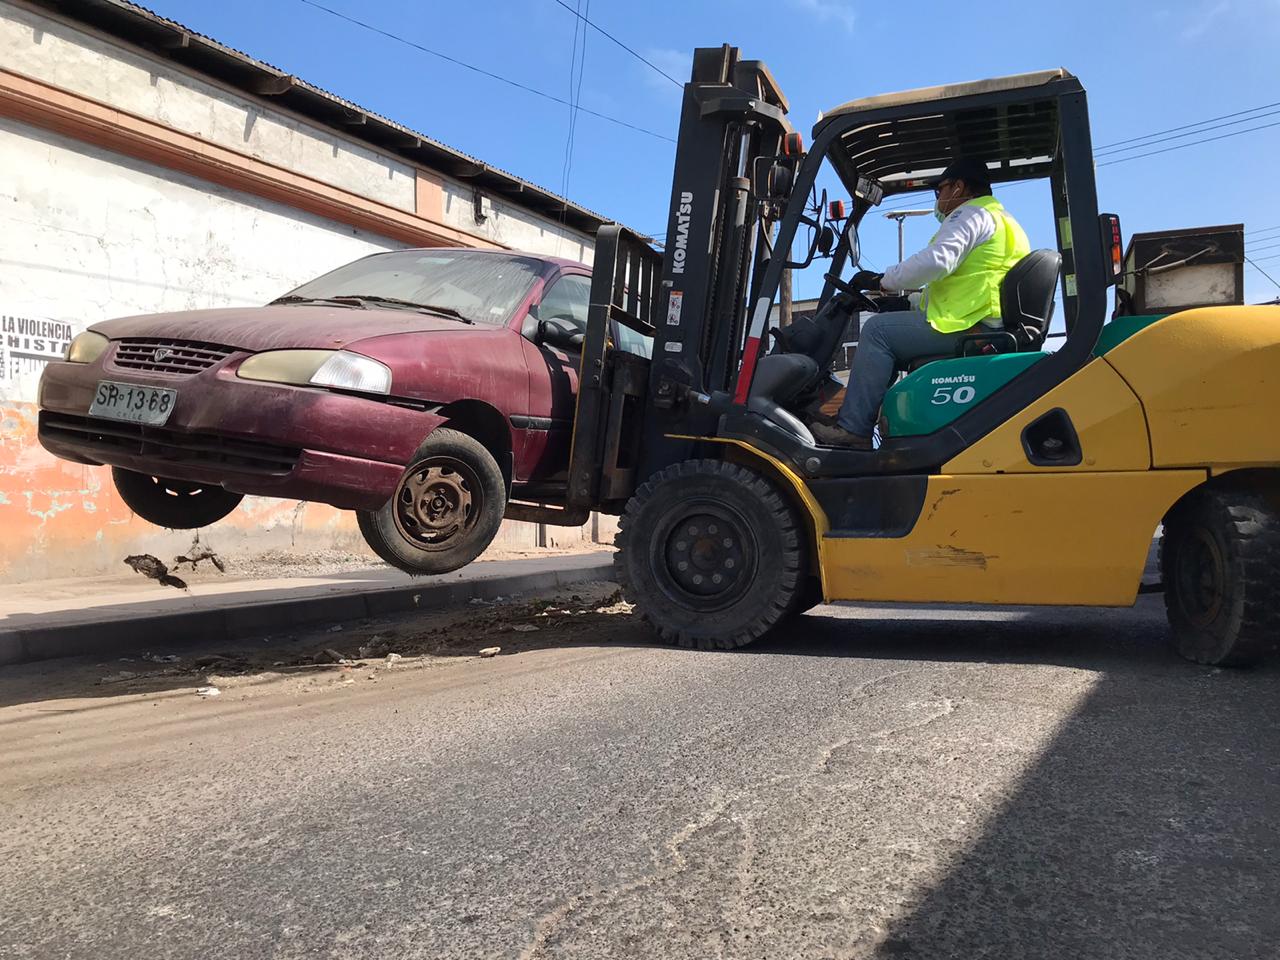 Municiapalidad de Iquique ha retirado 54 vehículos abandonados de las calles durante 2020